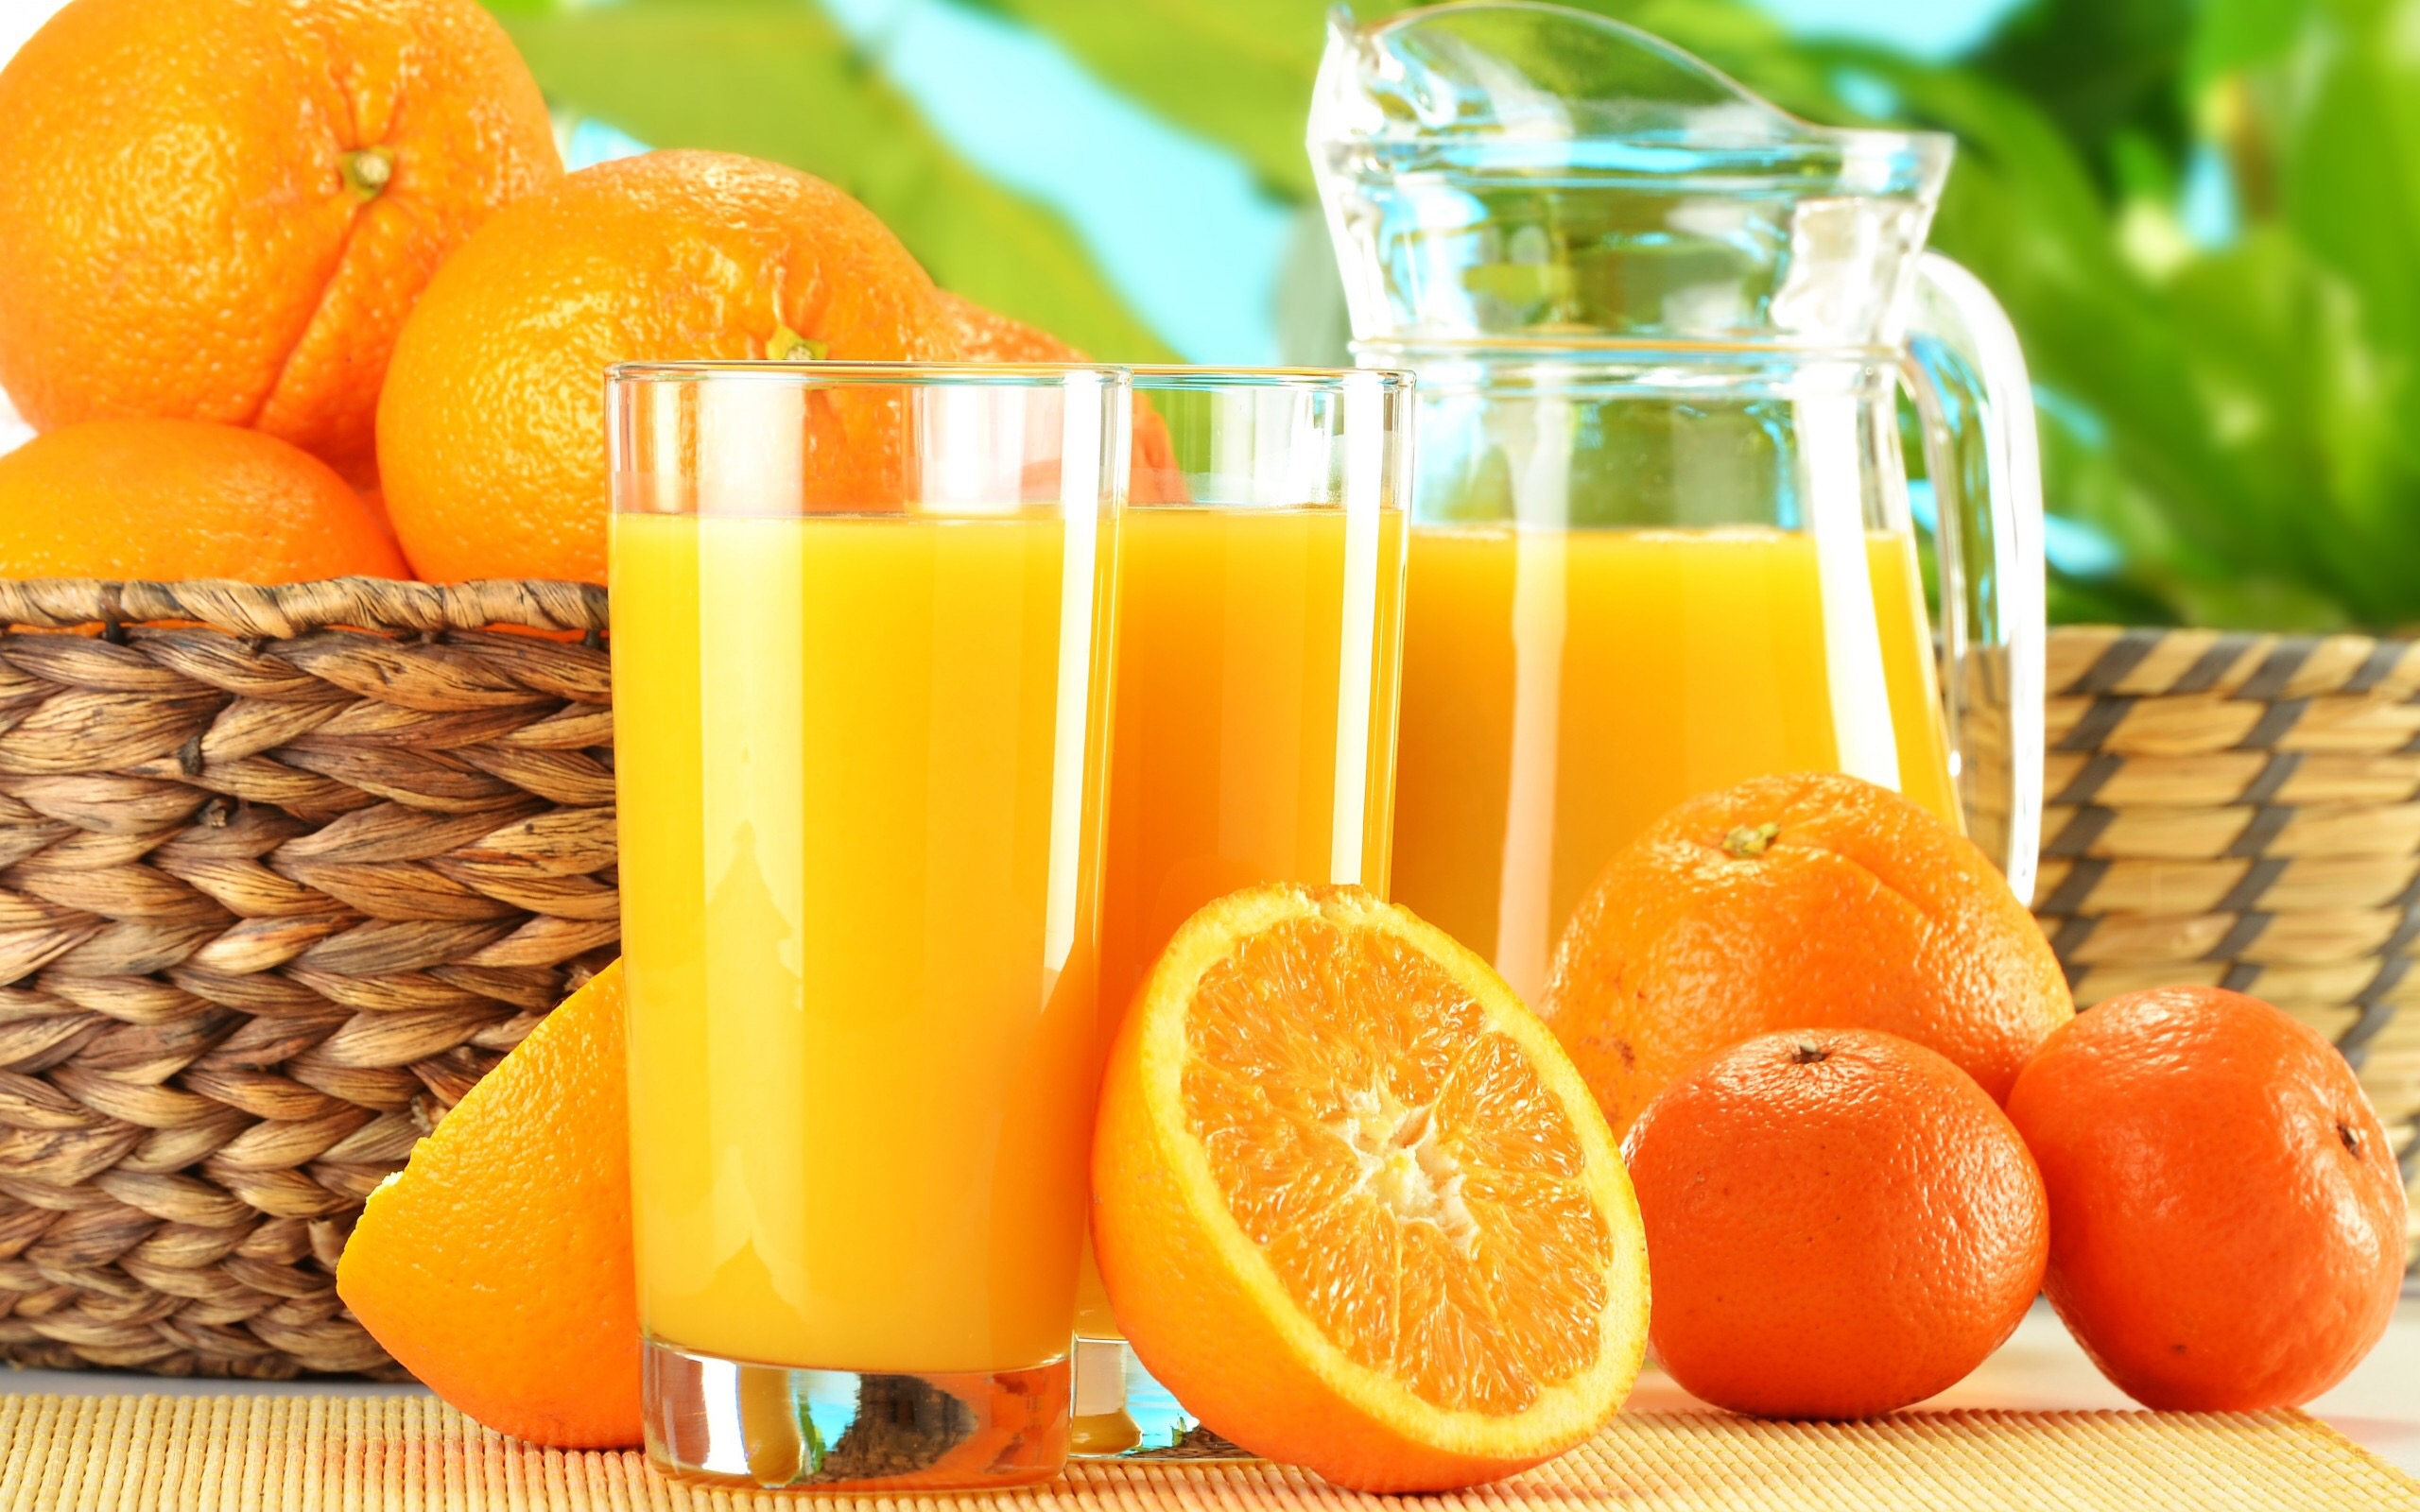 Spremuta d'arancia: calorie, benefici e consigli